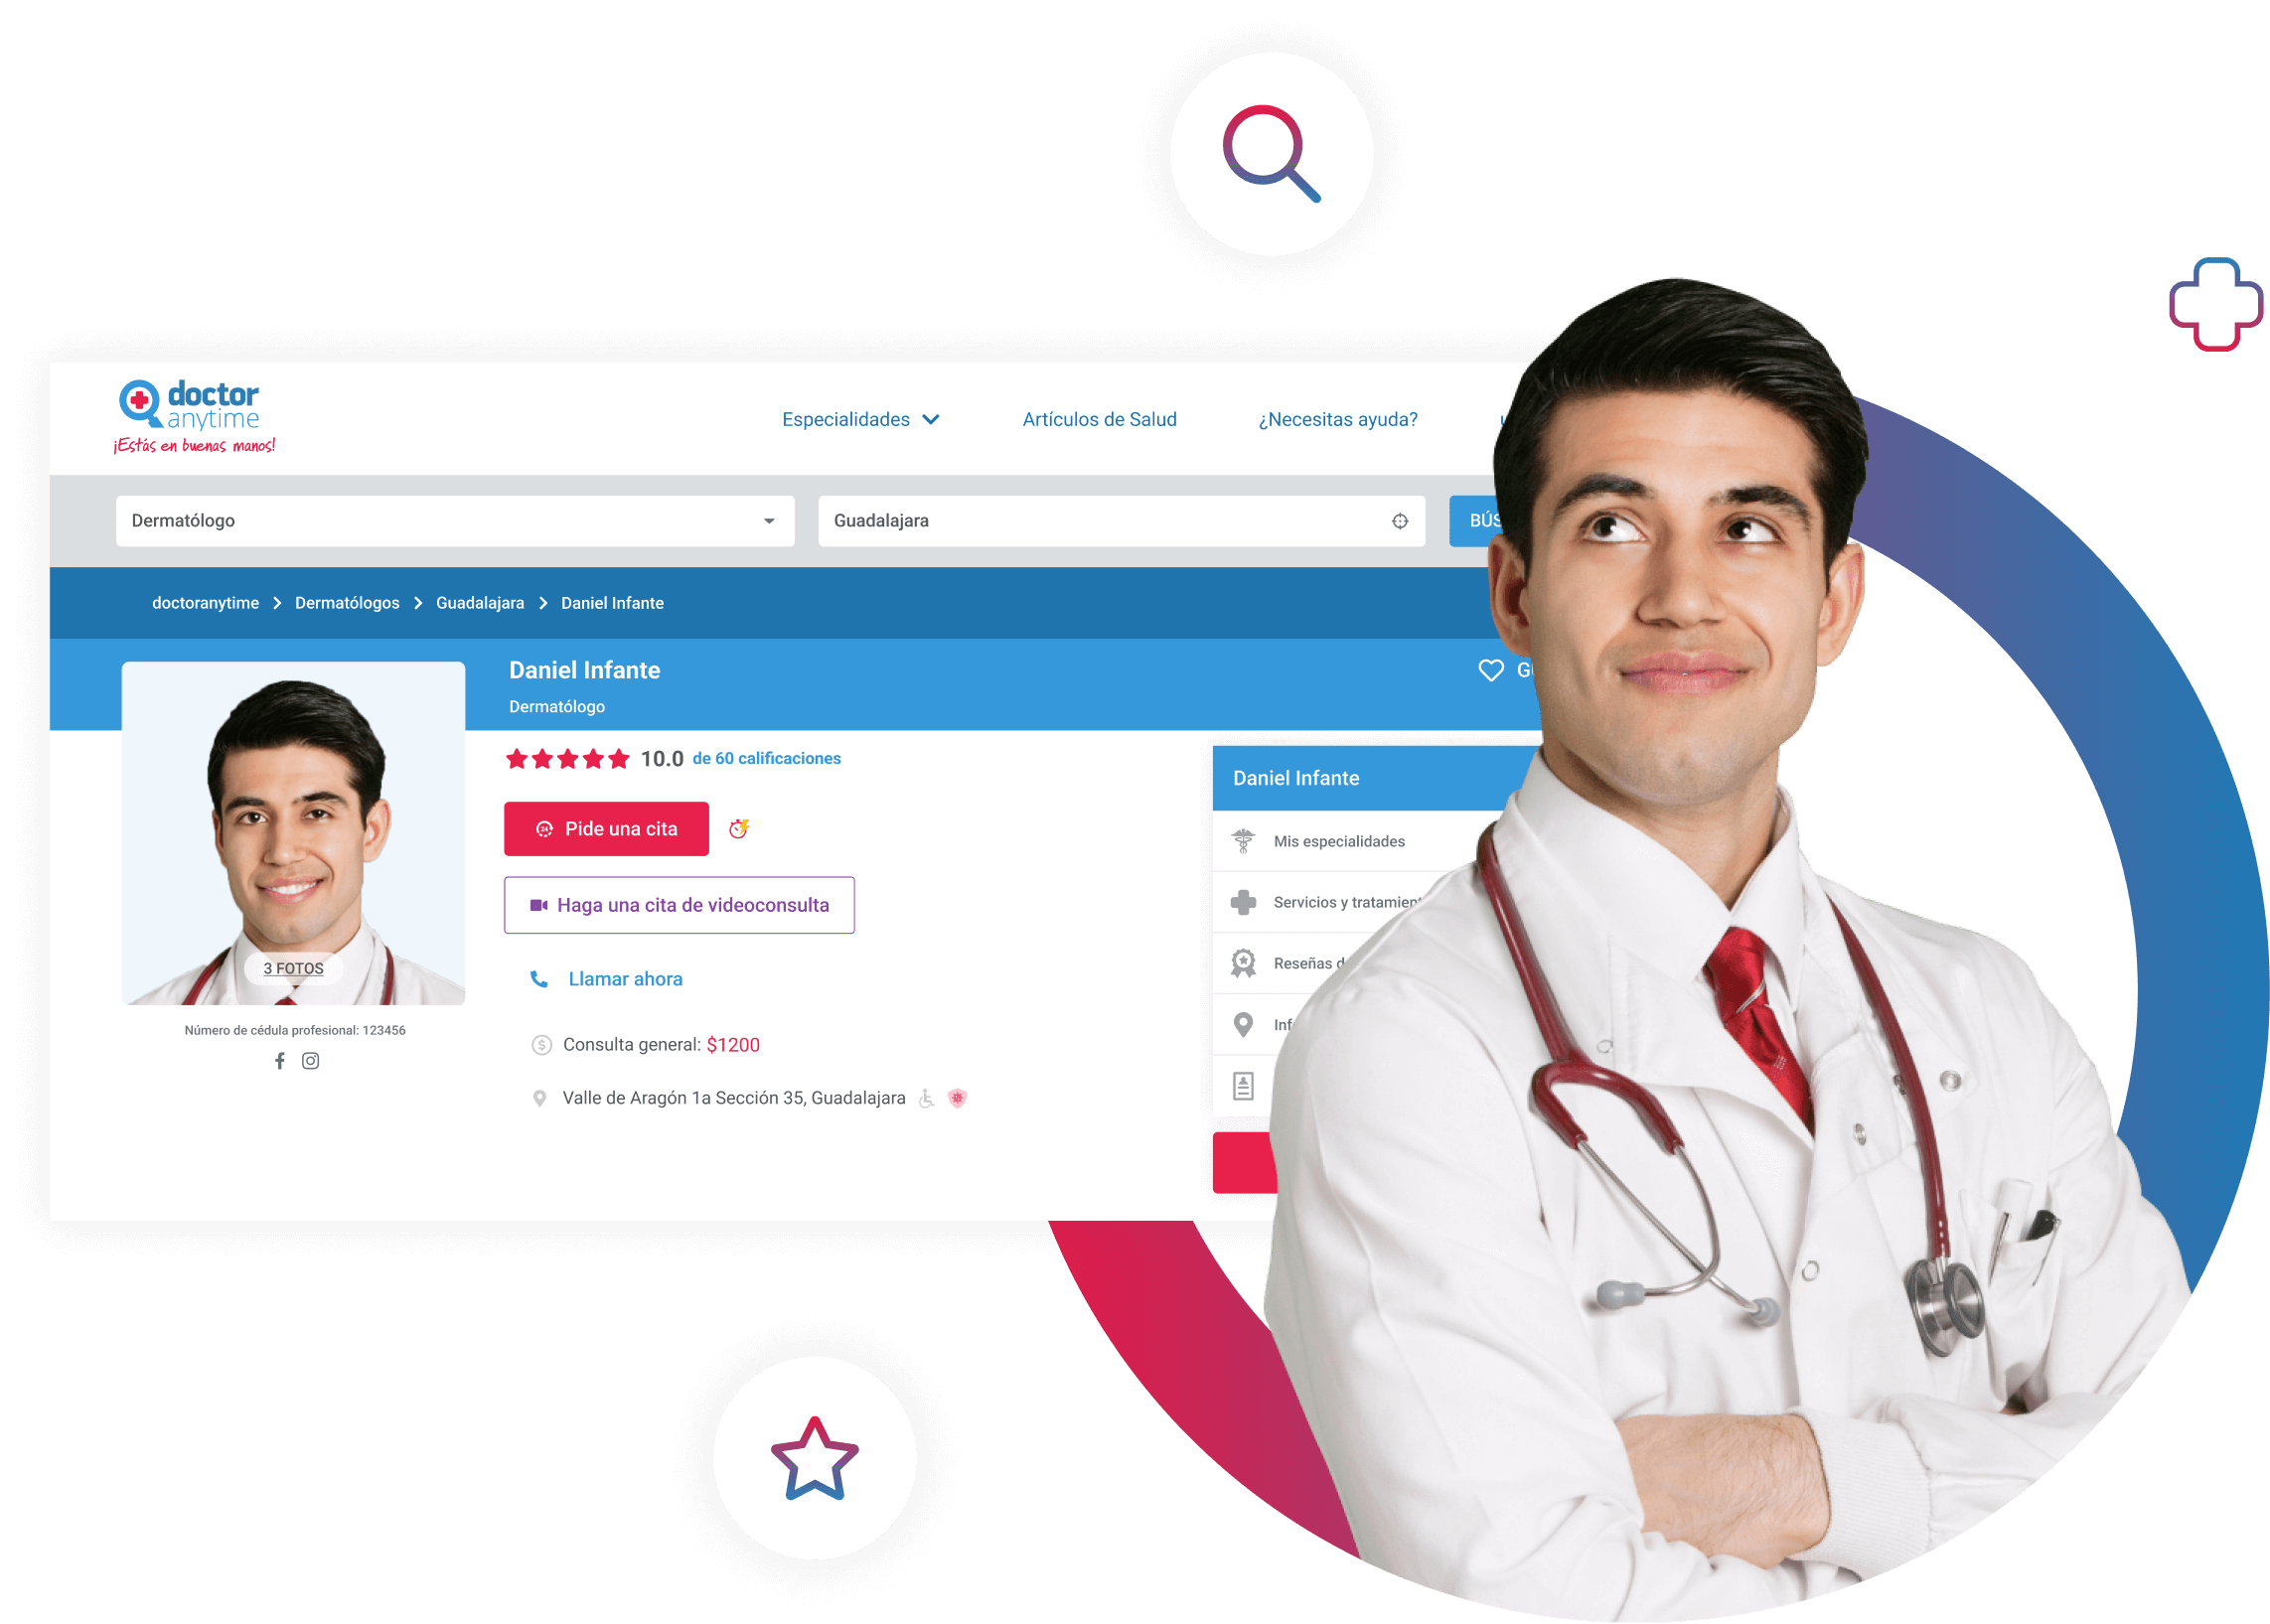 Médico Dermatólogo con su perfil completo en la plataforma médica de Doctoranytime para hacer consultas médicas en línea